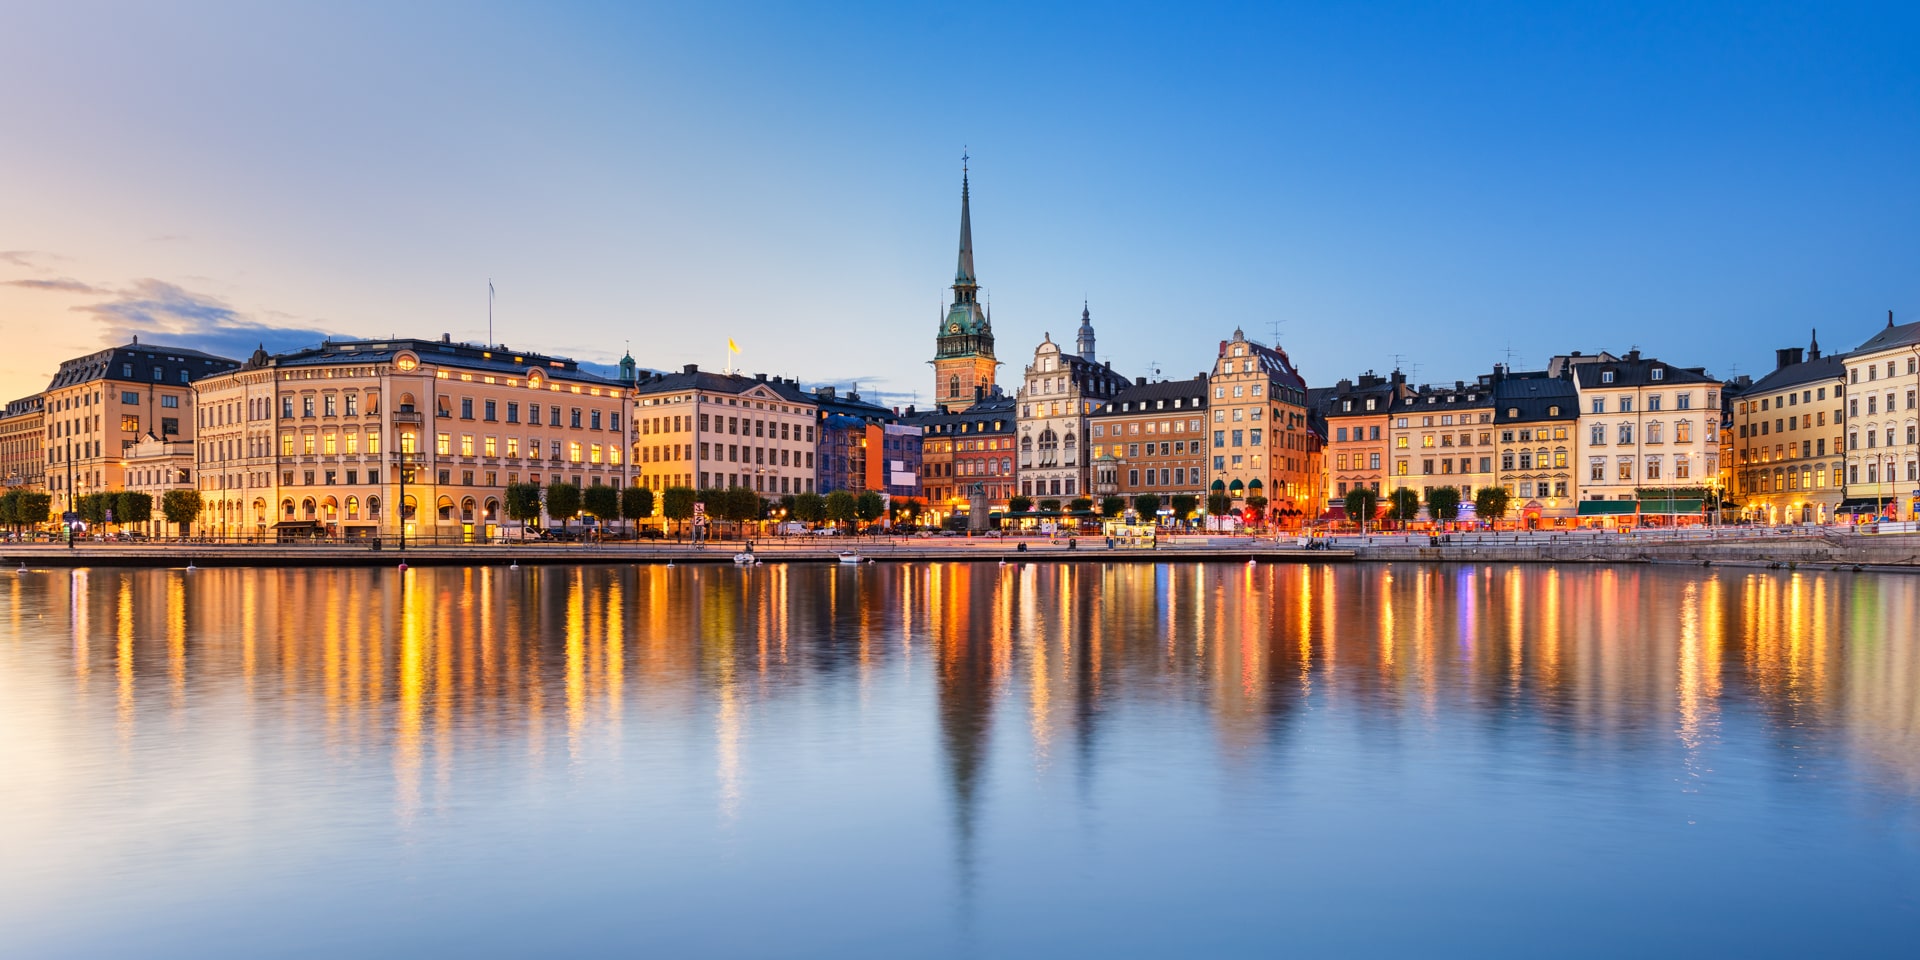 Что посмотреть и попробовать в Стокгольме? ТОП 10 мест | КИЙ АВІА